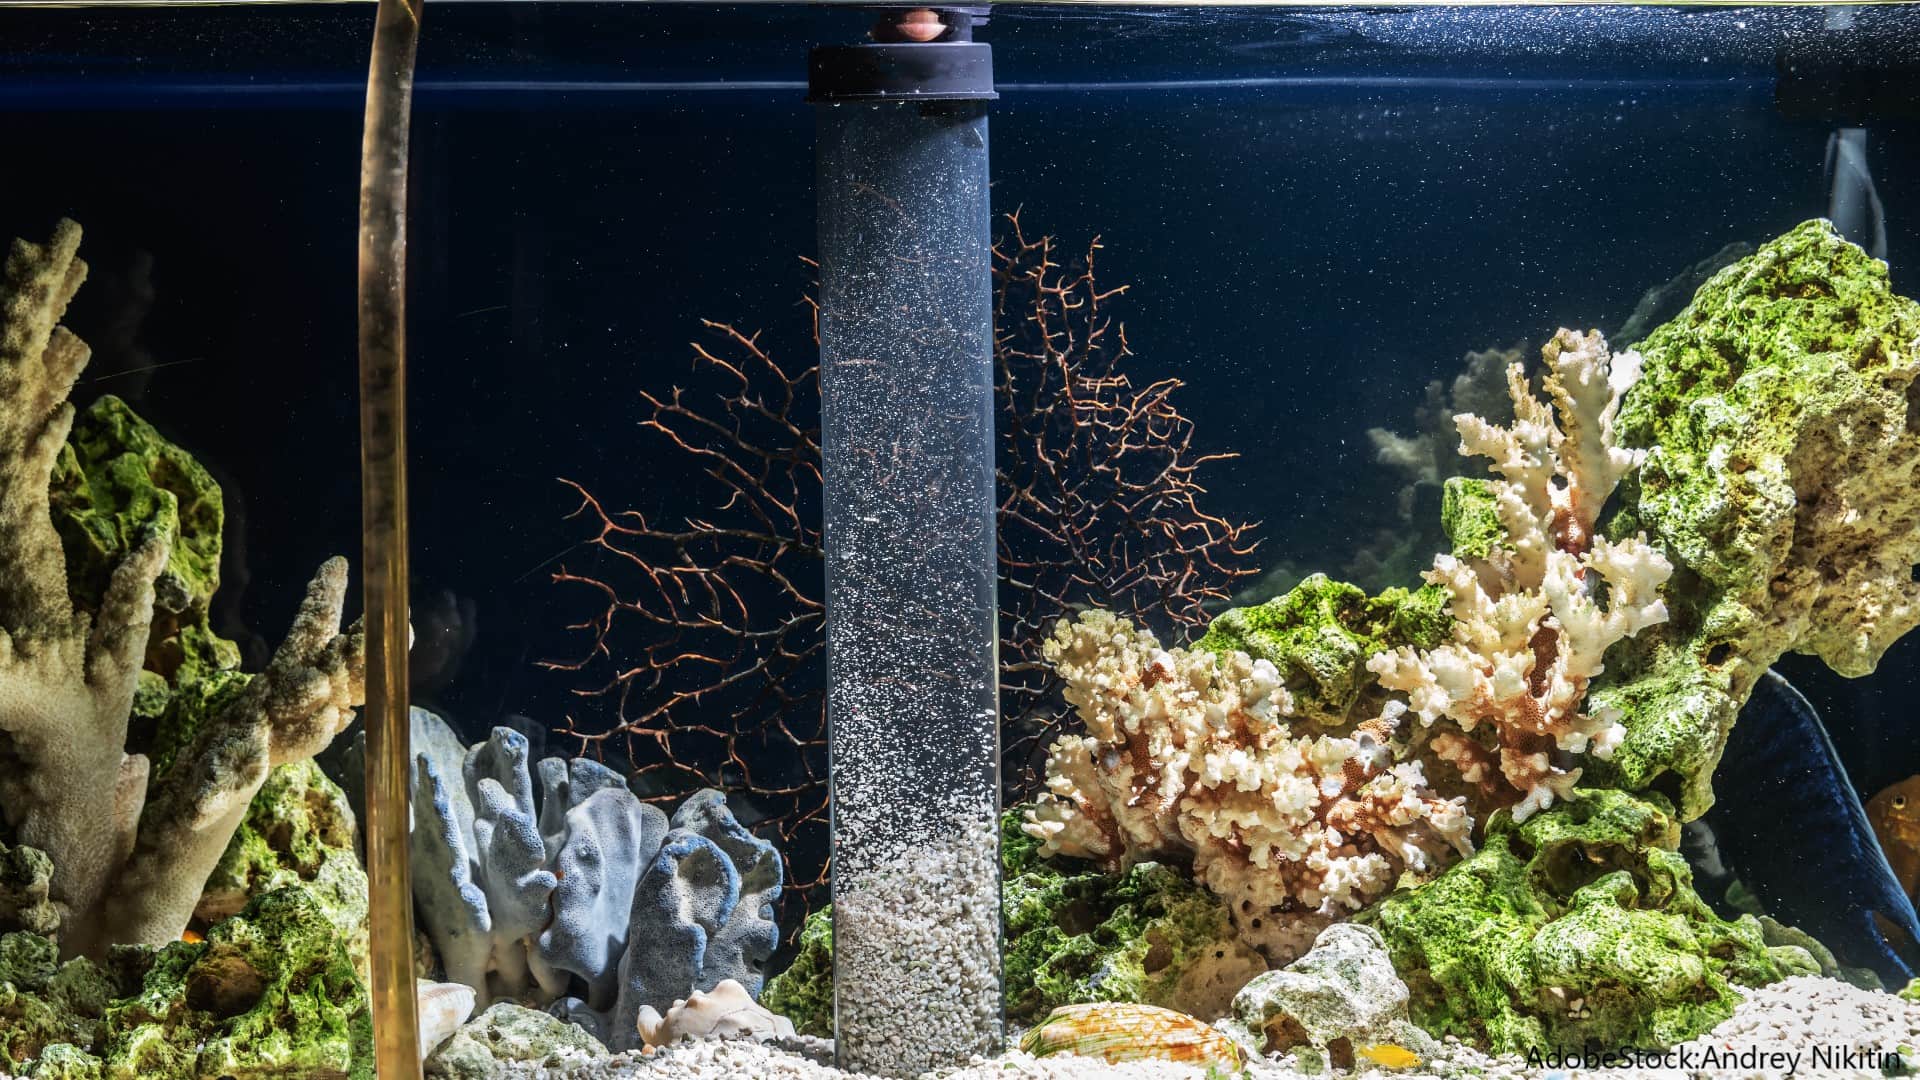 Aquarium Boden reinigen: Man sieht eine Mulmglocke, die Kiesboden im Aquarium aufwirbelt